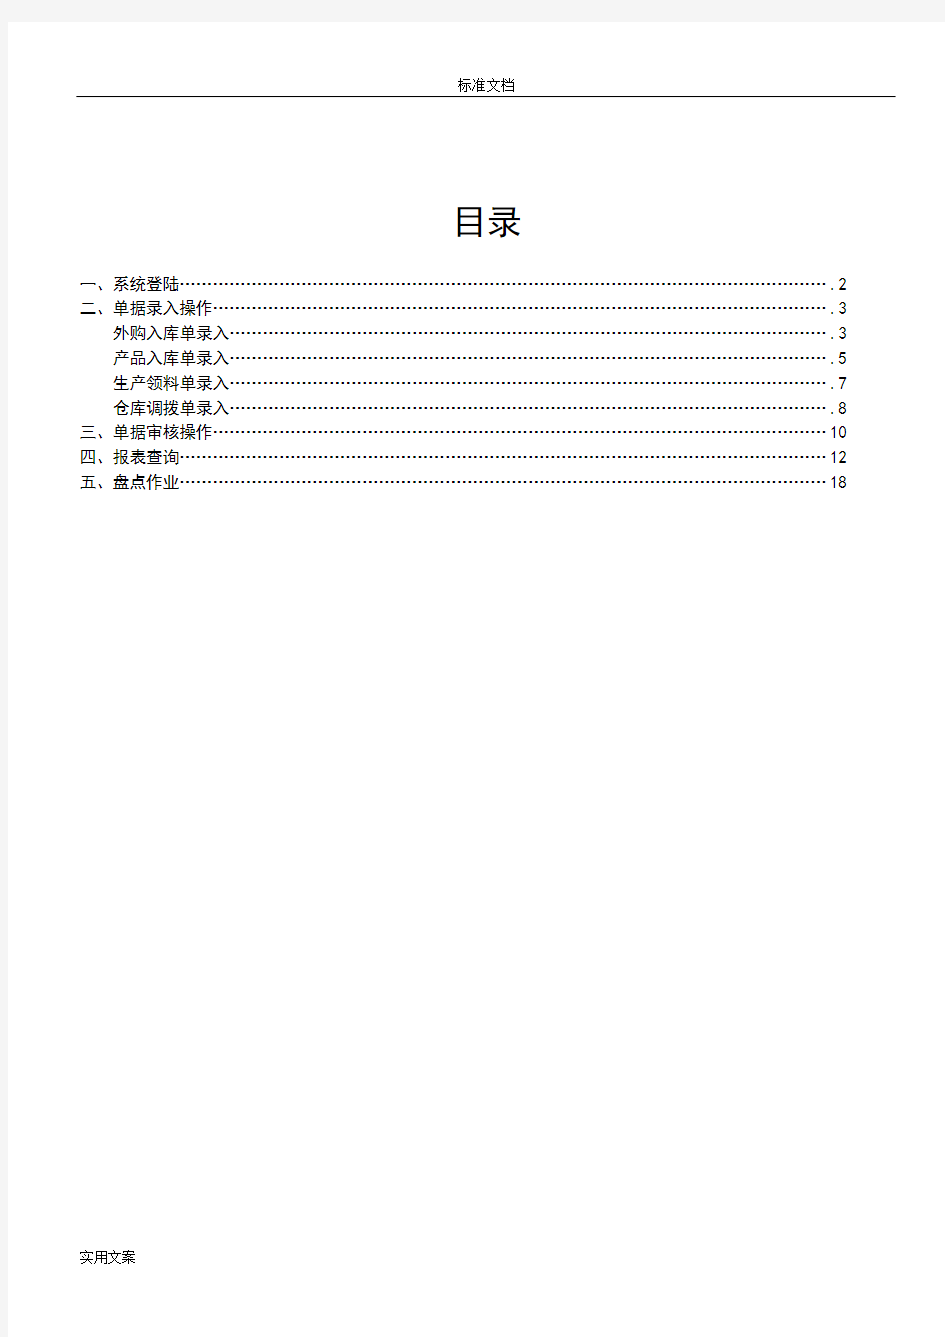 金蝶K3仓存管理系统用户操作手册簿